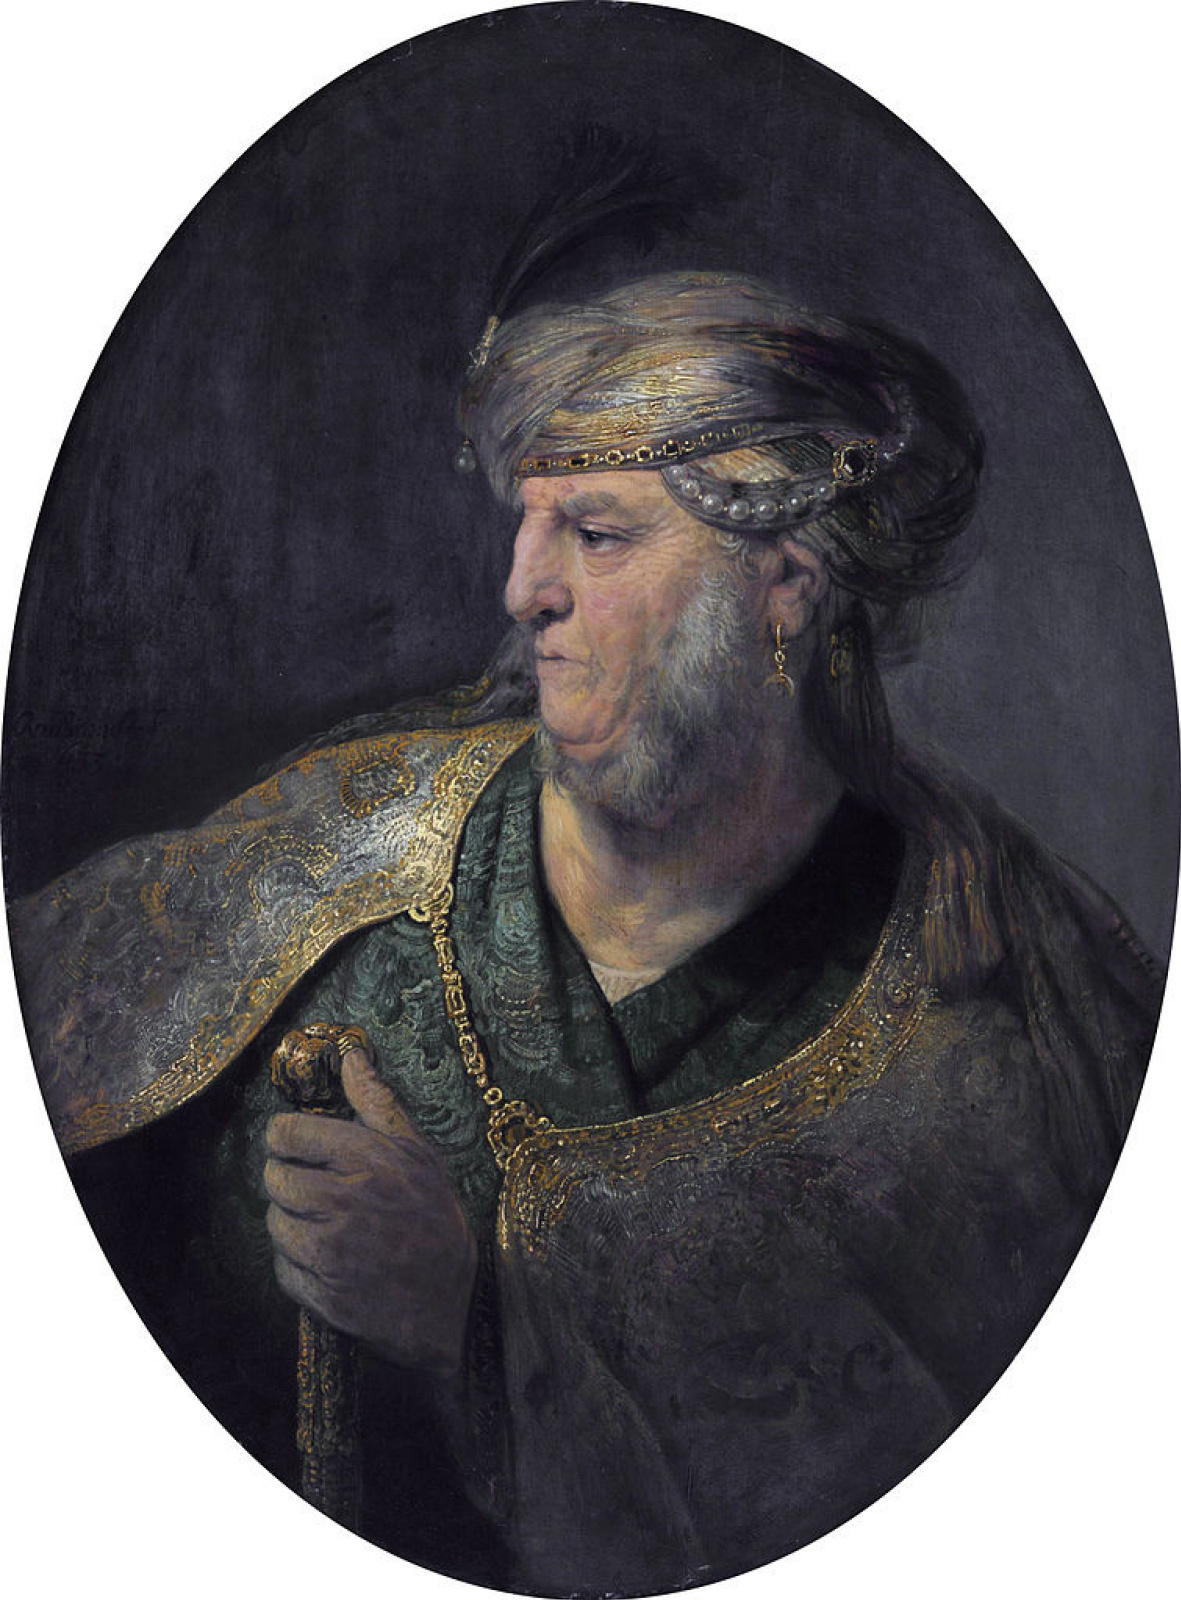 Рембрандт Харменс ван Рейн. Портрет мужчины в восточном одеянии